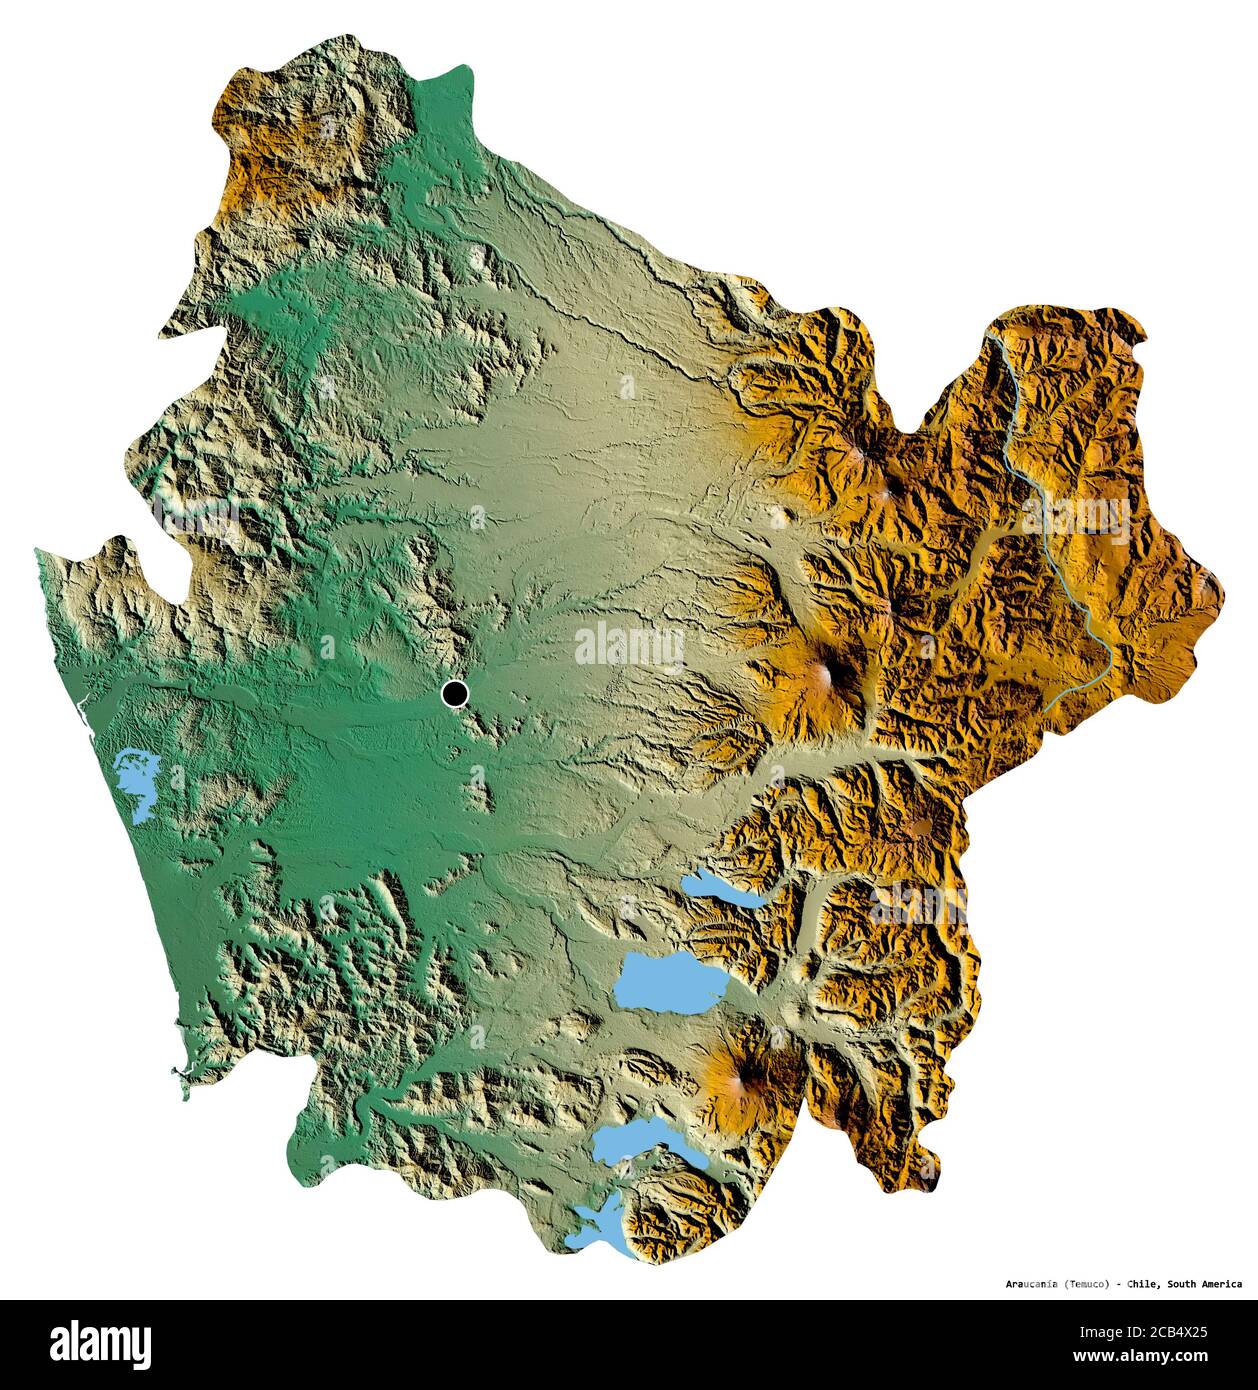 Forme de l'Araucanía, région du Chili, avec sa capitale isolée sur fond blanc. Carte topographique de relief. Rendu 3D Banque D'Images